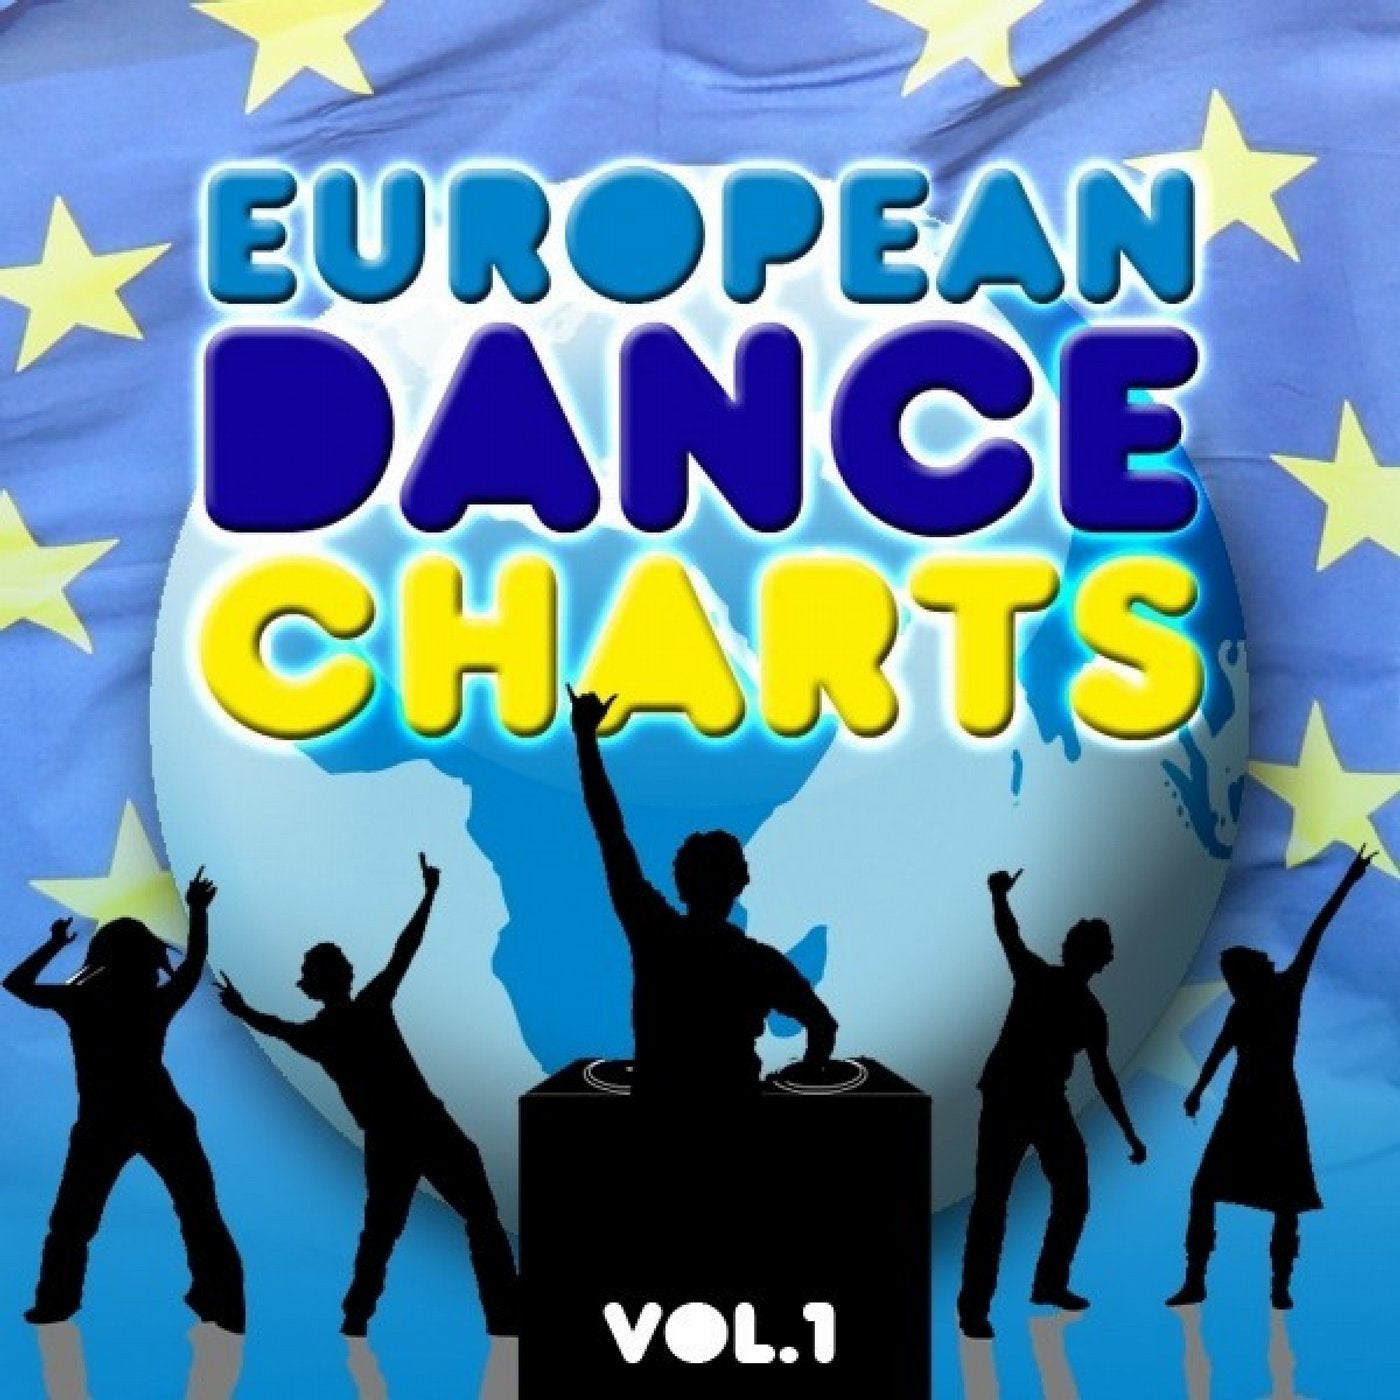 European Dance Charts Vol. 1